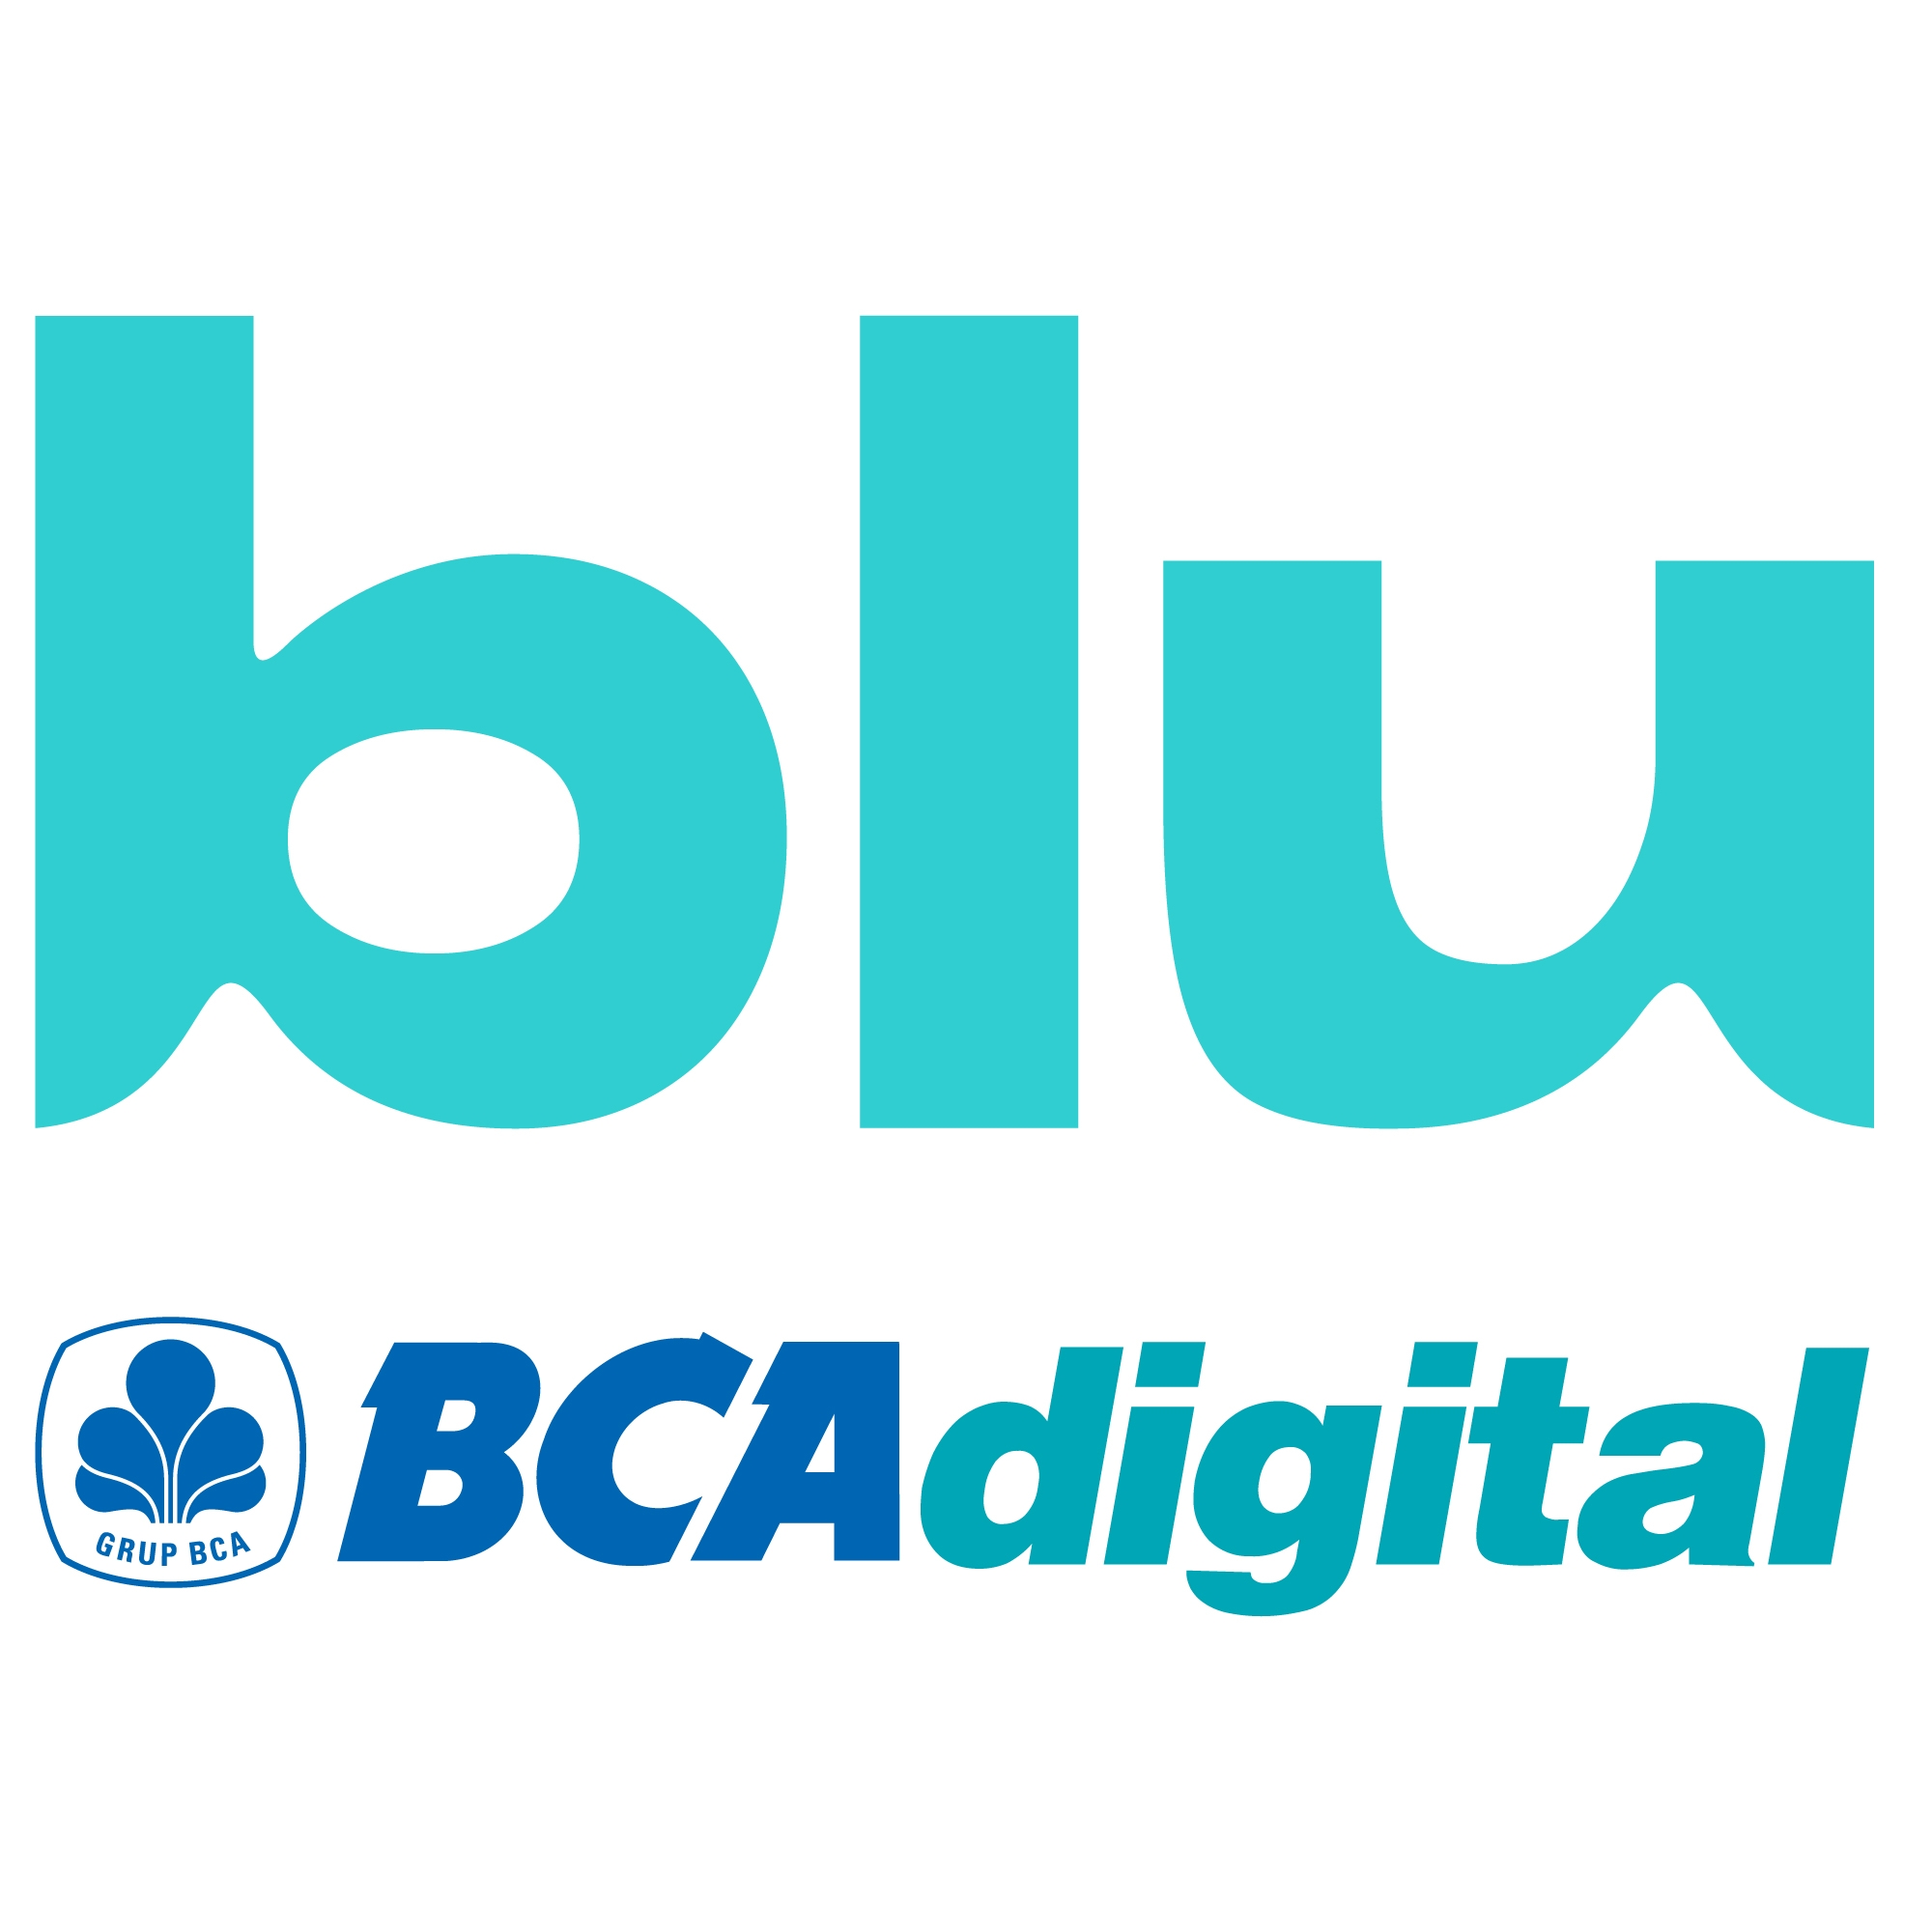 Satu Tahun, Pengguna Blu by BCA Digital Capai 806 Ribu  